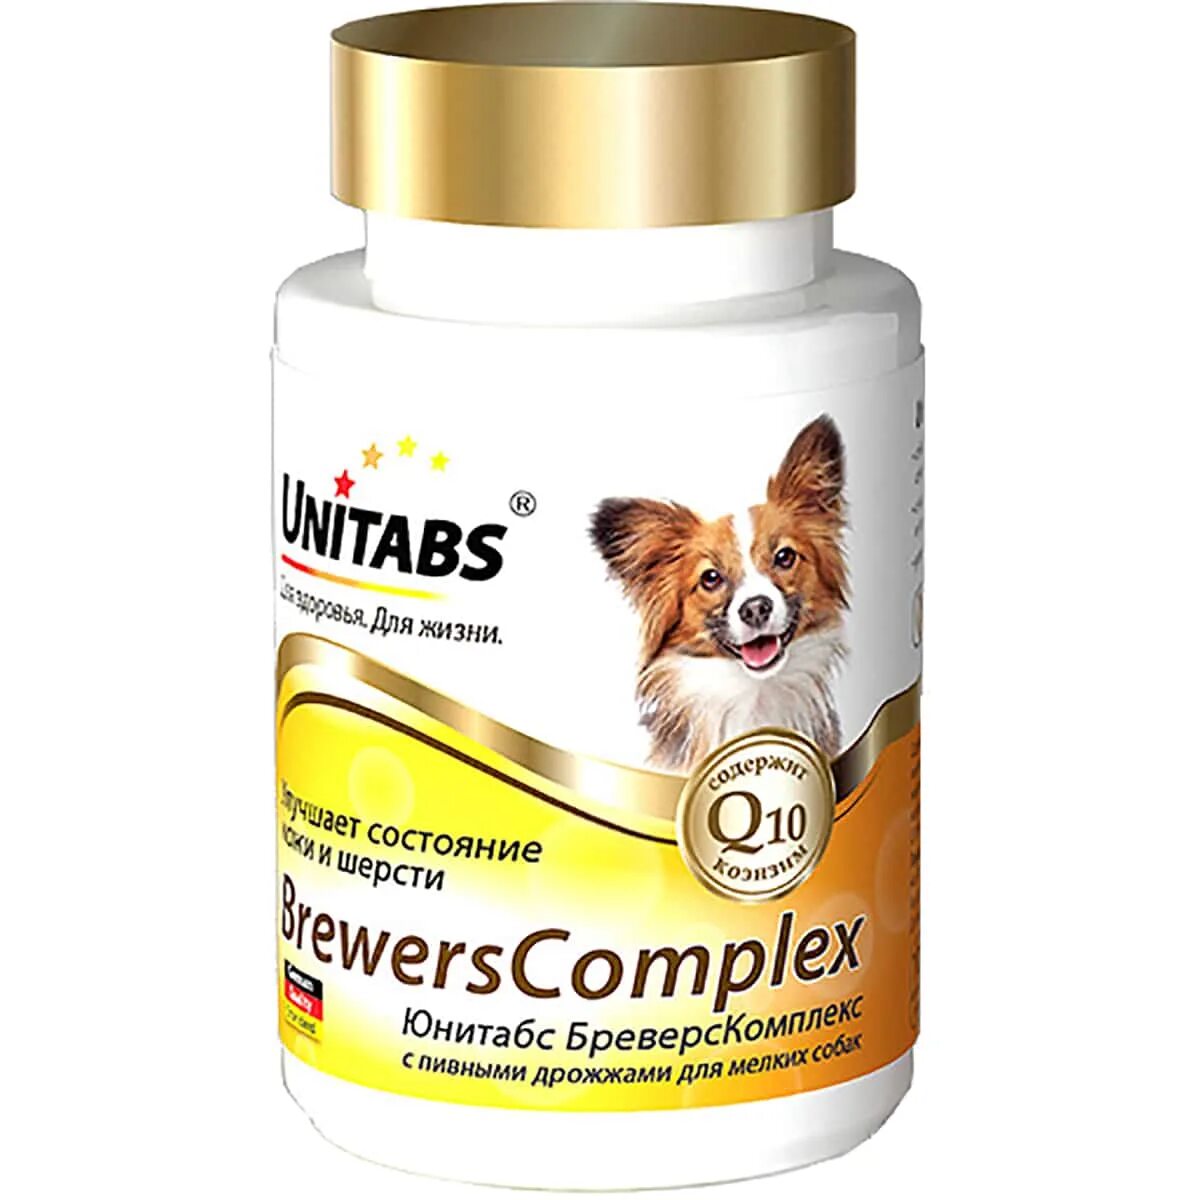 Как давать витамины собаке. ЭКОПРОМ UNITABS витамины для собак крупных пород q10 Immuno Complex 100 таб u205. Юнитабс CALCIPLUS С q10 для собак 100 таб. UNITABS витамины для собак. Витамины Юнитабс для собак ИММУНОКОМПЛЕКС.